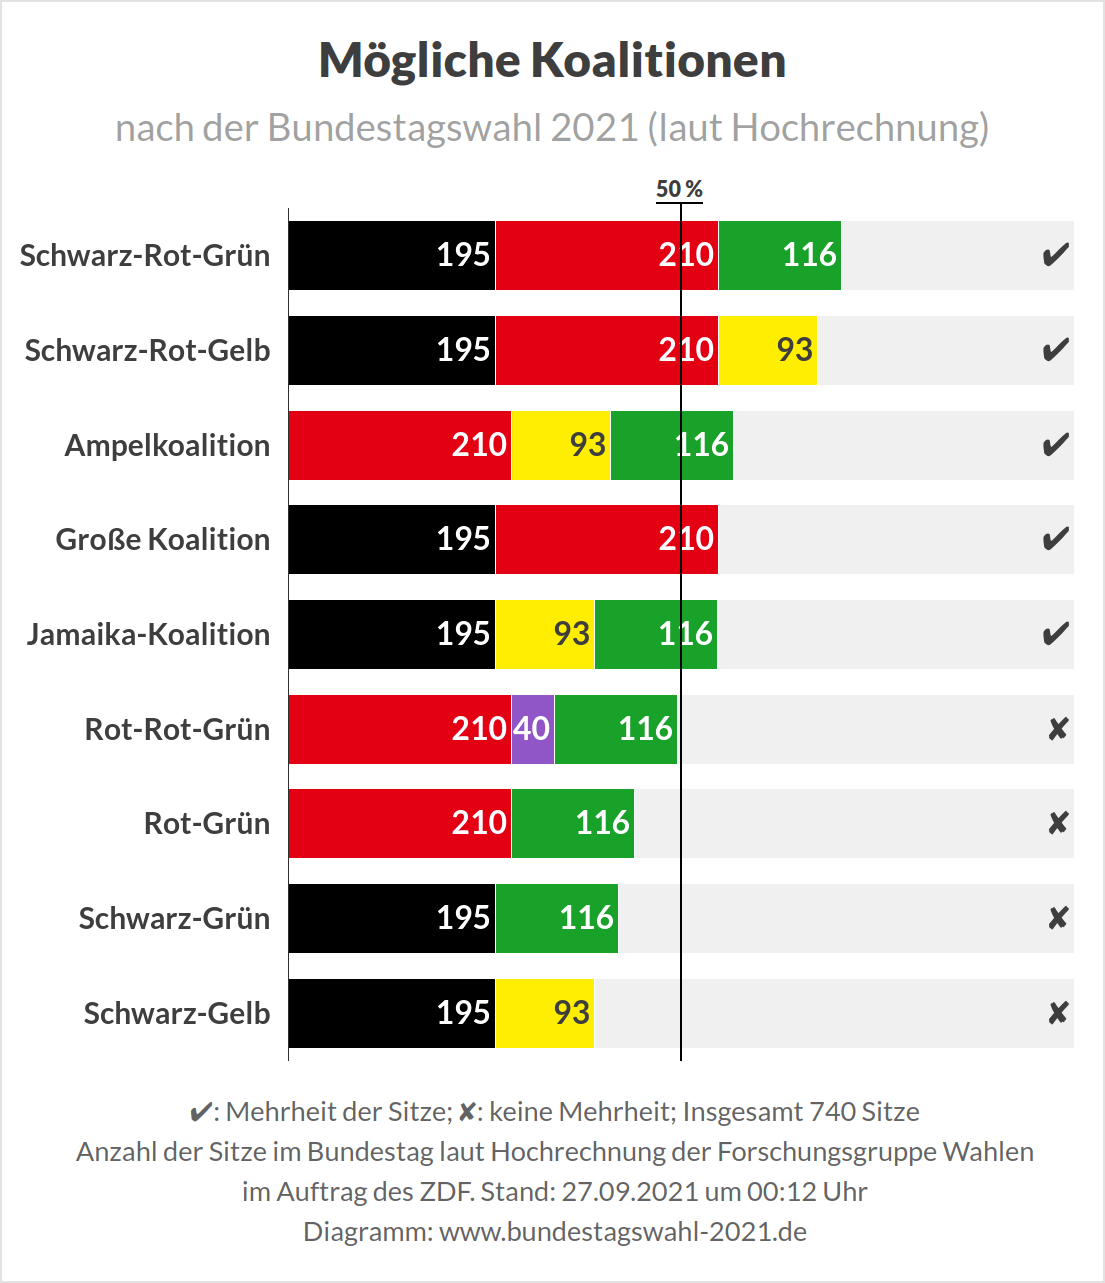 Bundestagswahl 2021 - Hochrechnung der Möglichen Koalitionen